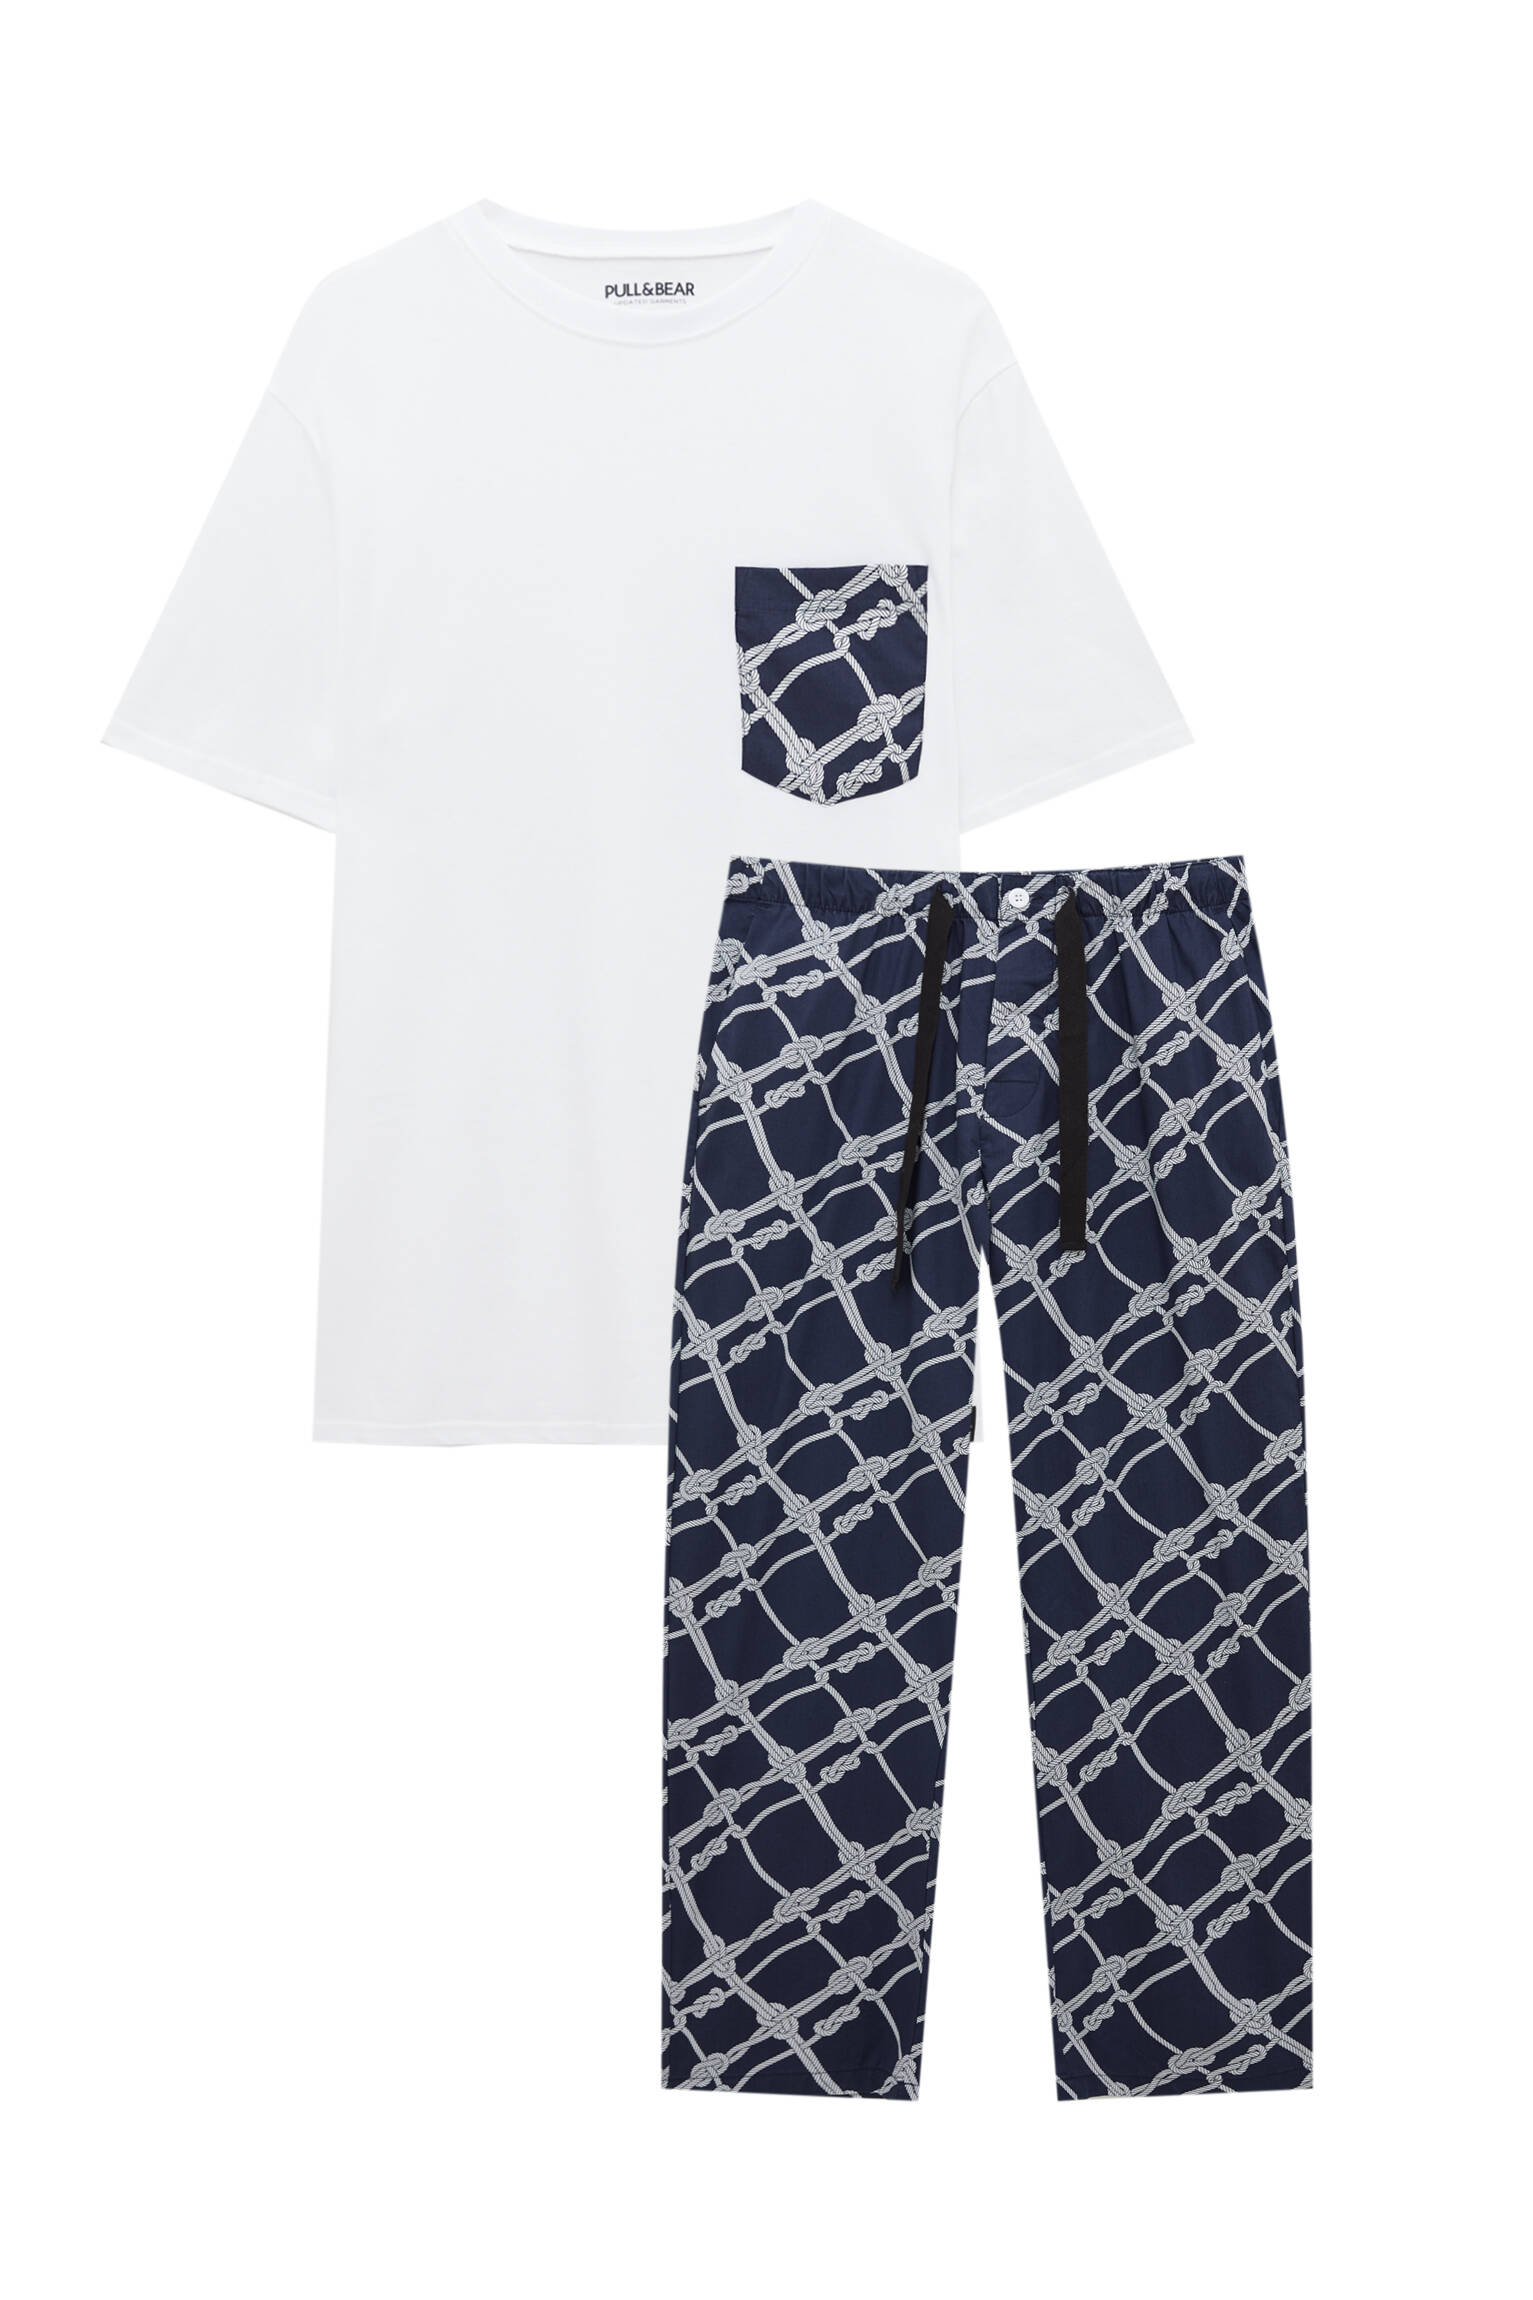 Pull&bear Homme Pyjama 100 % Coton Avec T-shirt à Manches Courtes Et Pantalon Imprimé. Exclusivement En Ligne. Bleu Marine L